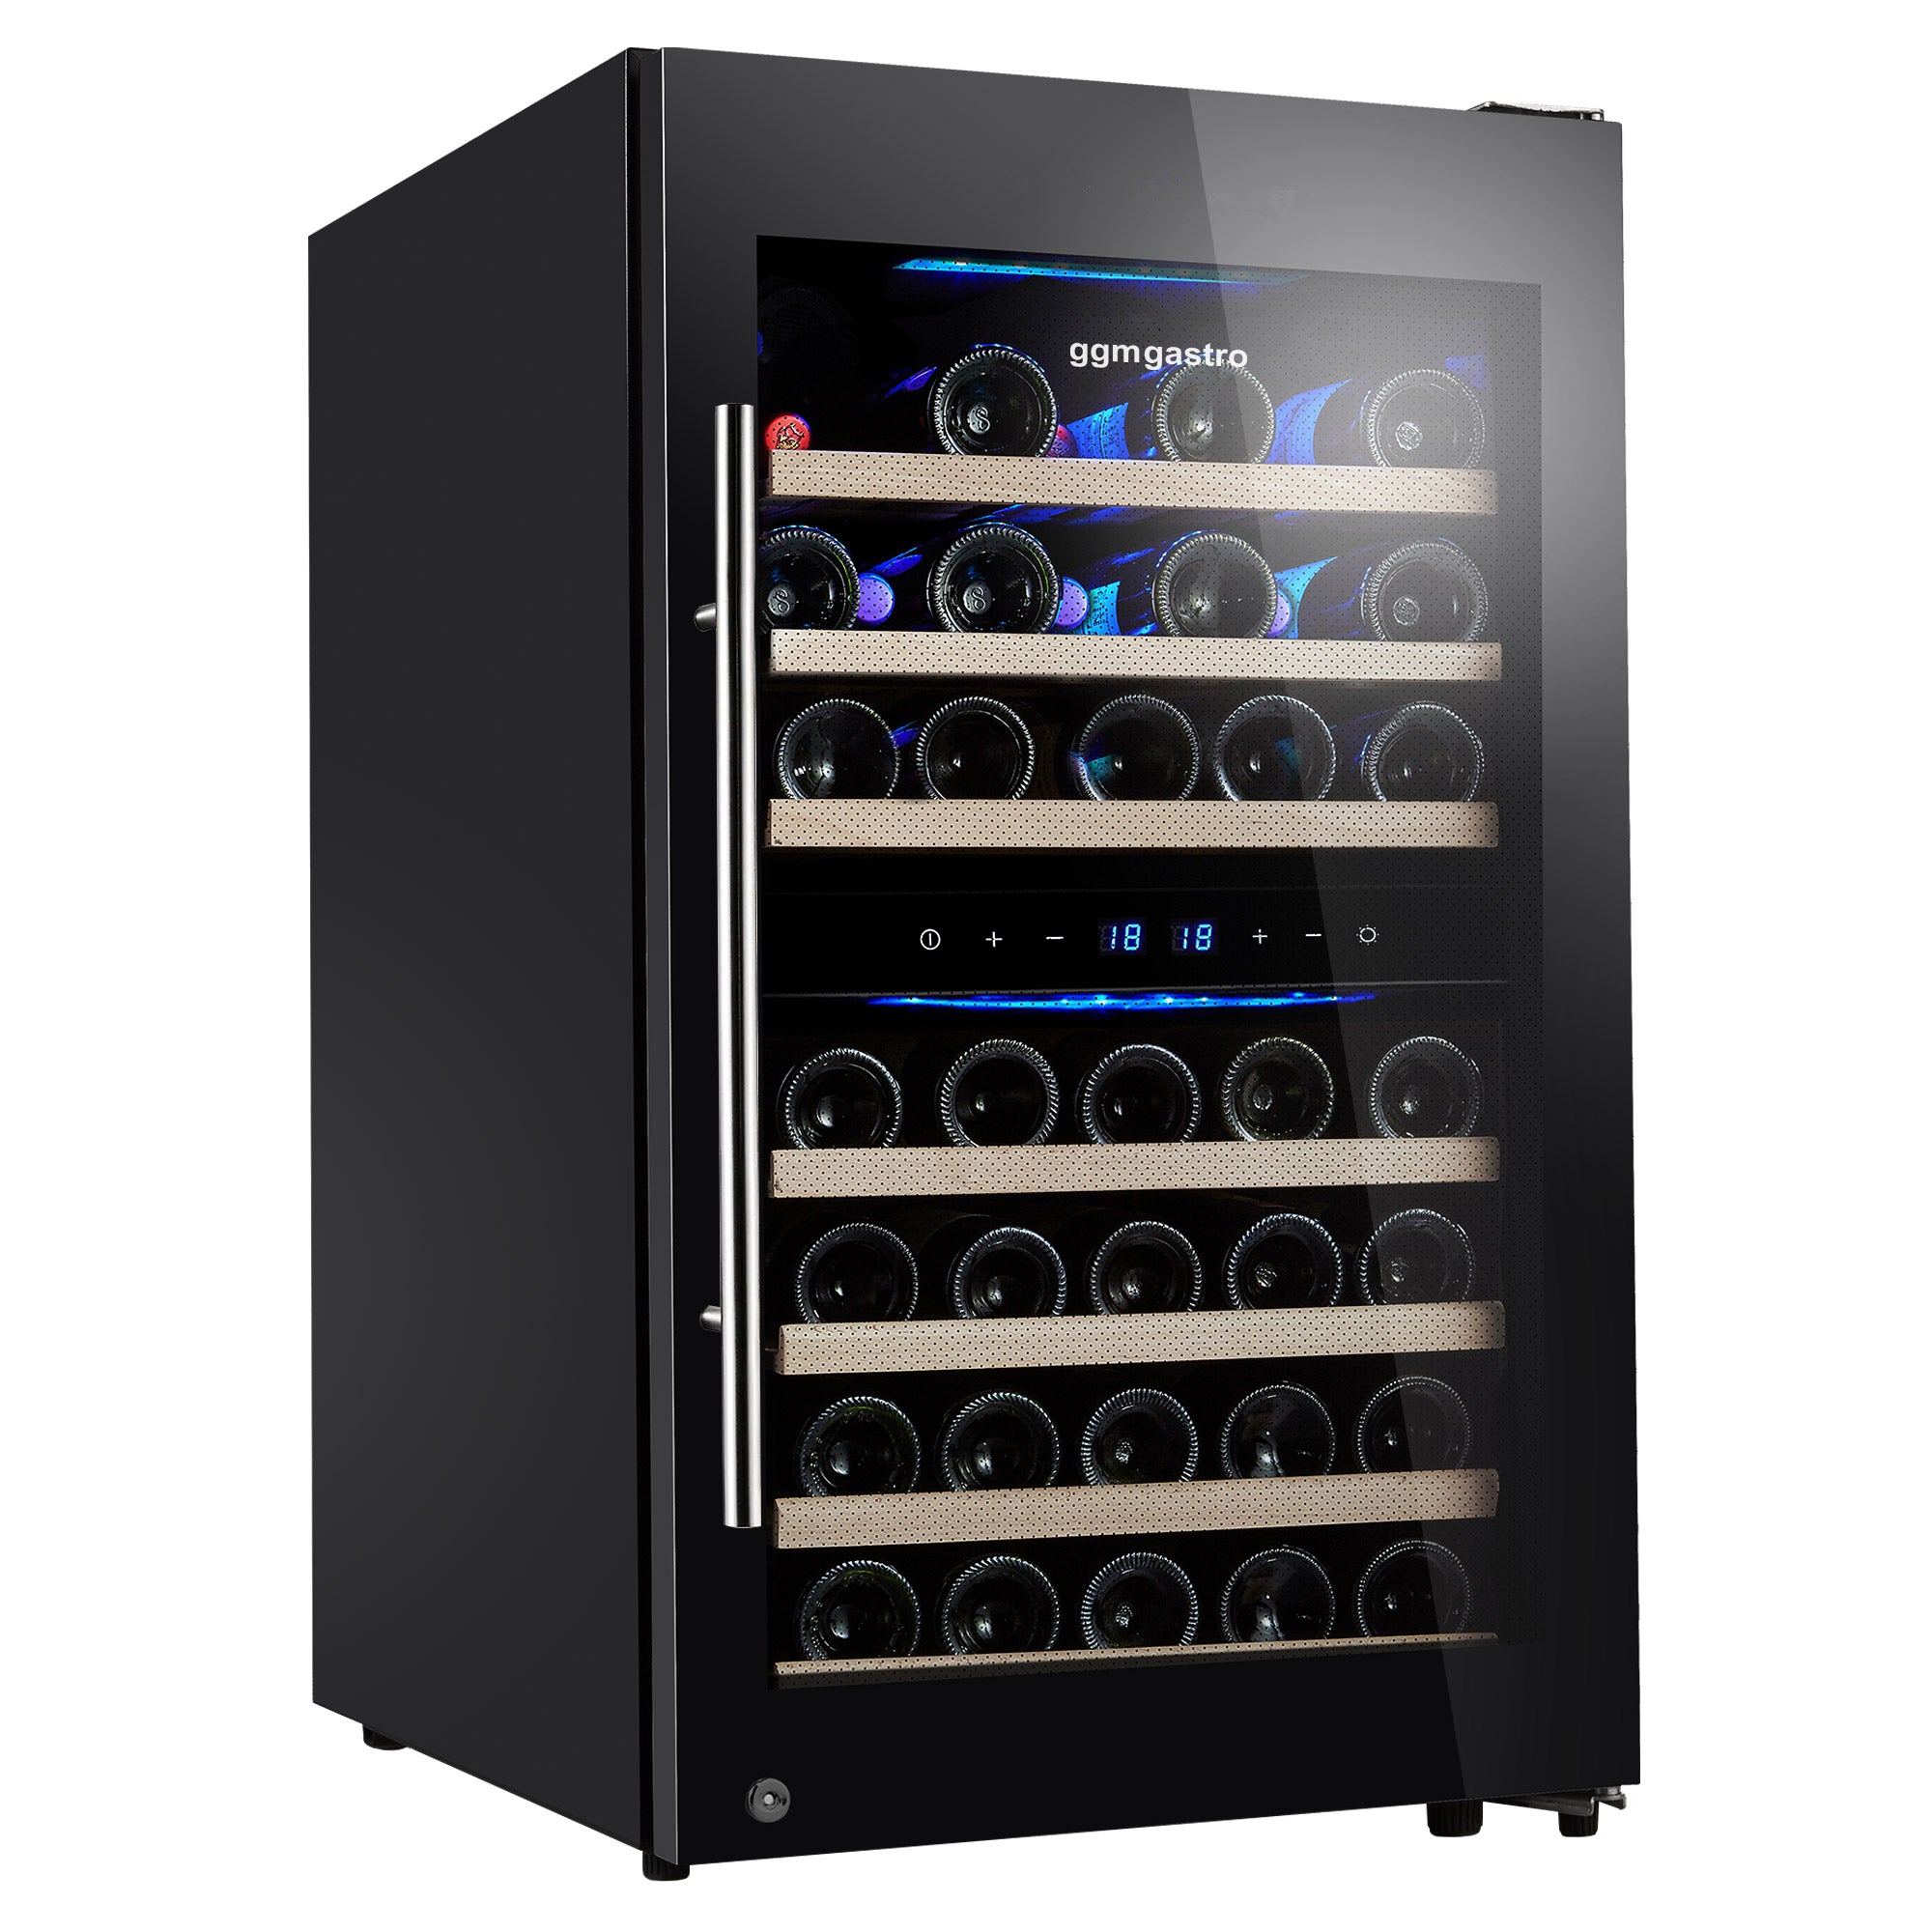 Vinkjøleskap - 108 liter - svart / med 2 klimasoner